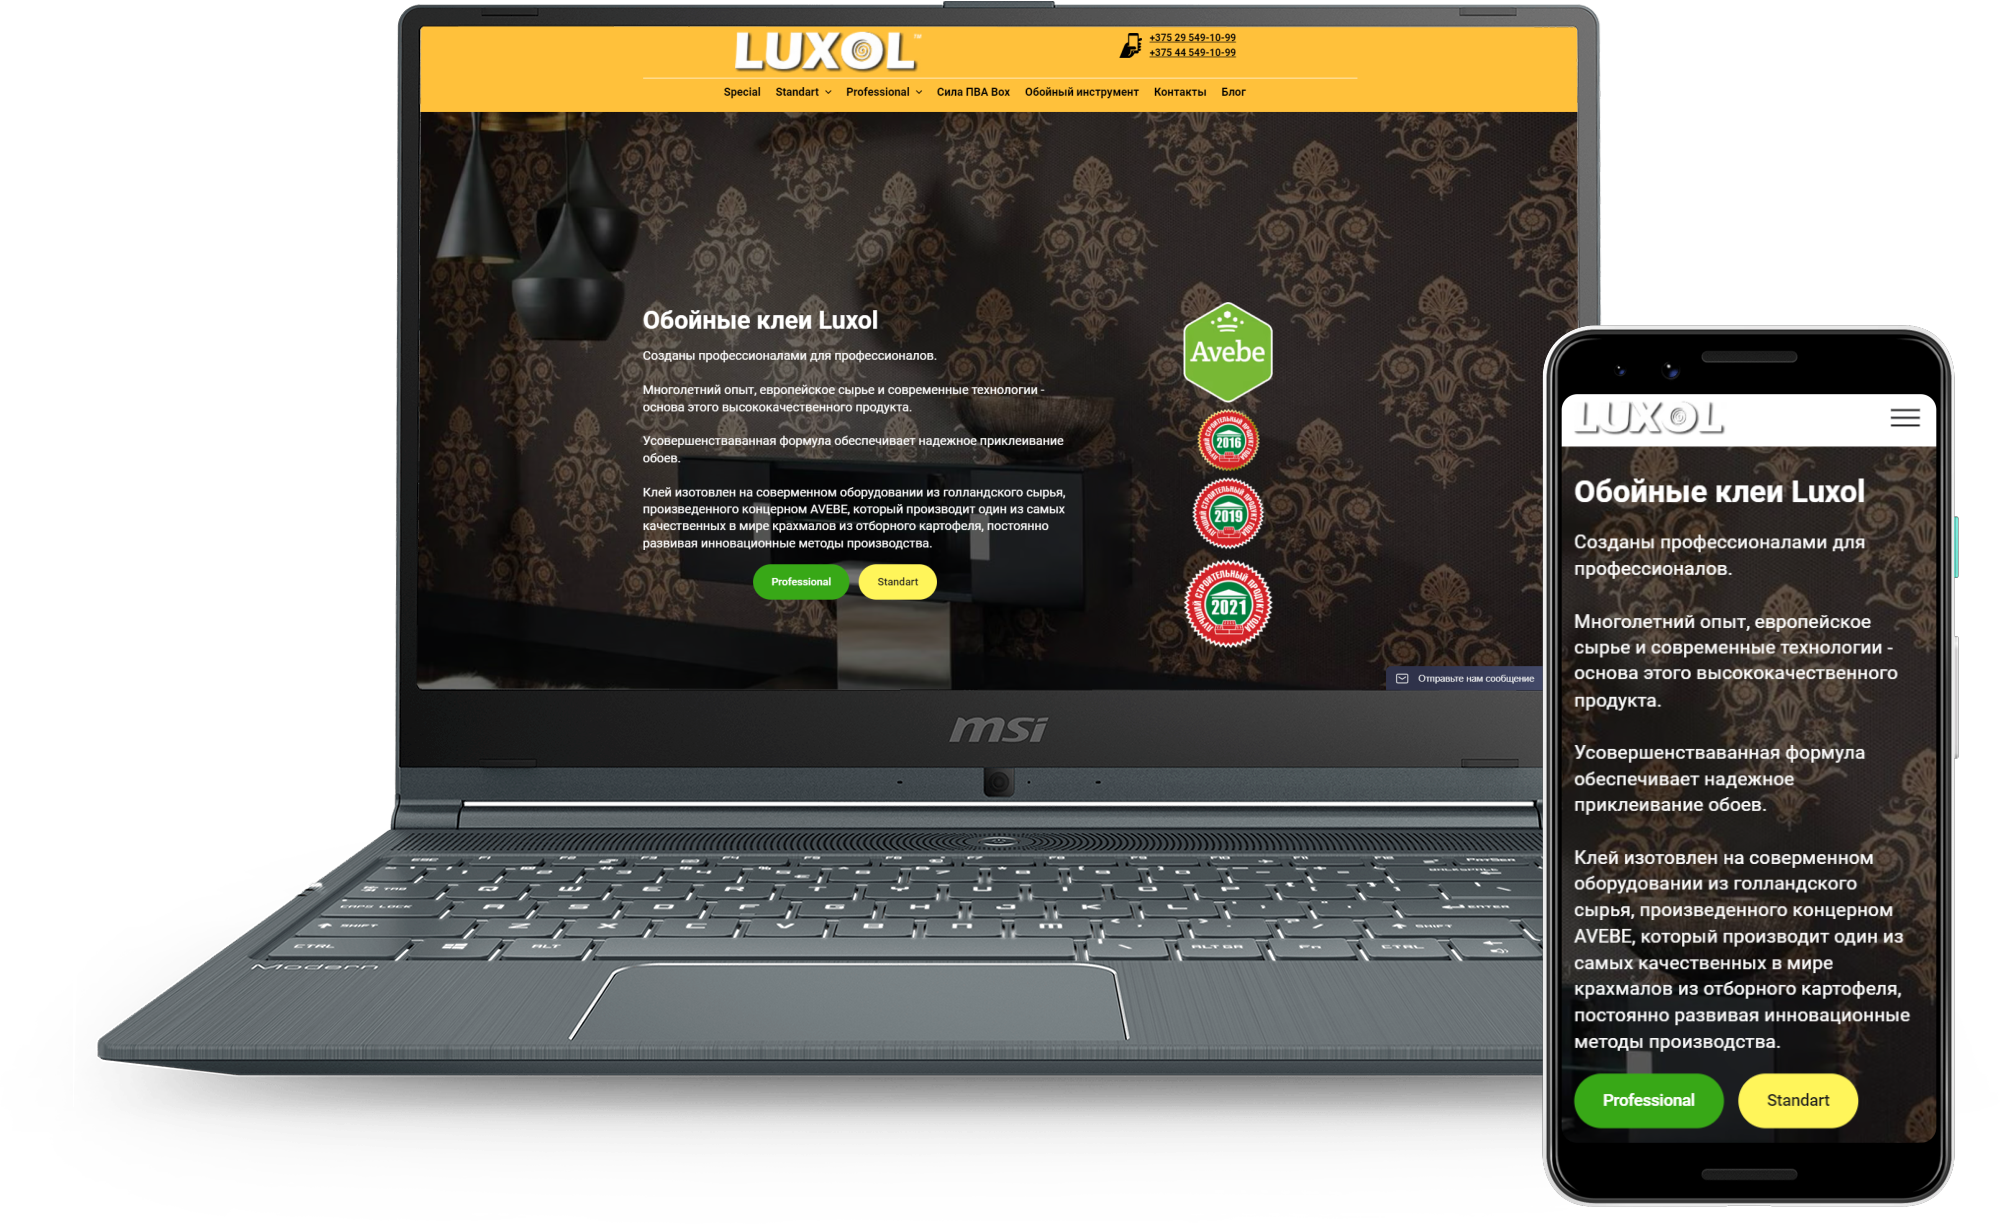 Сайт производителя обойного клея Luxol для РБ